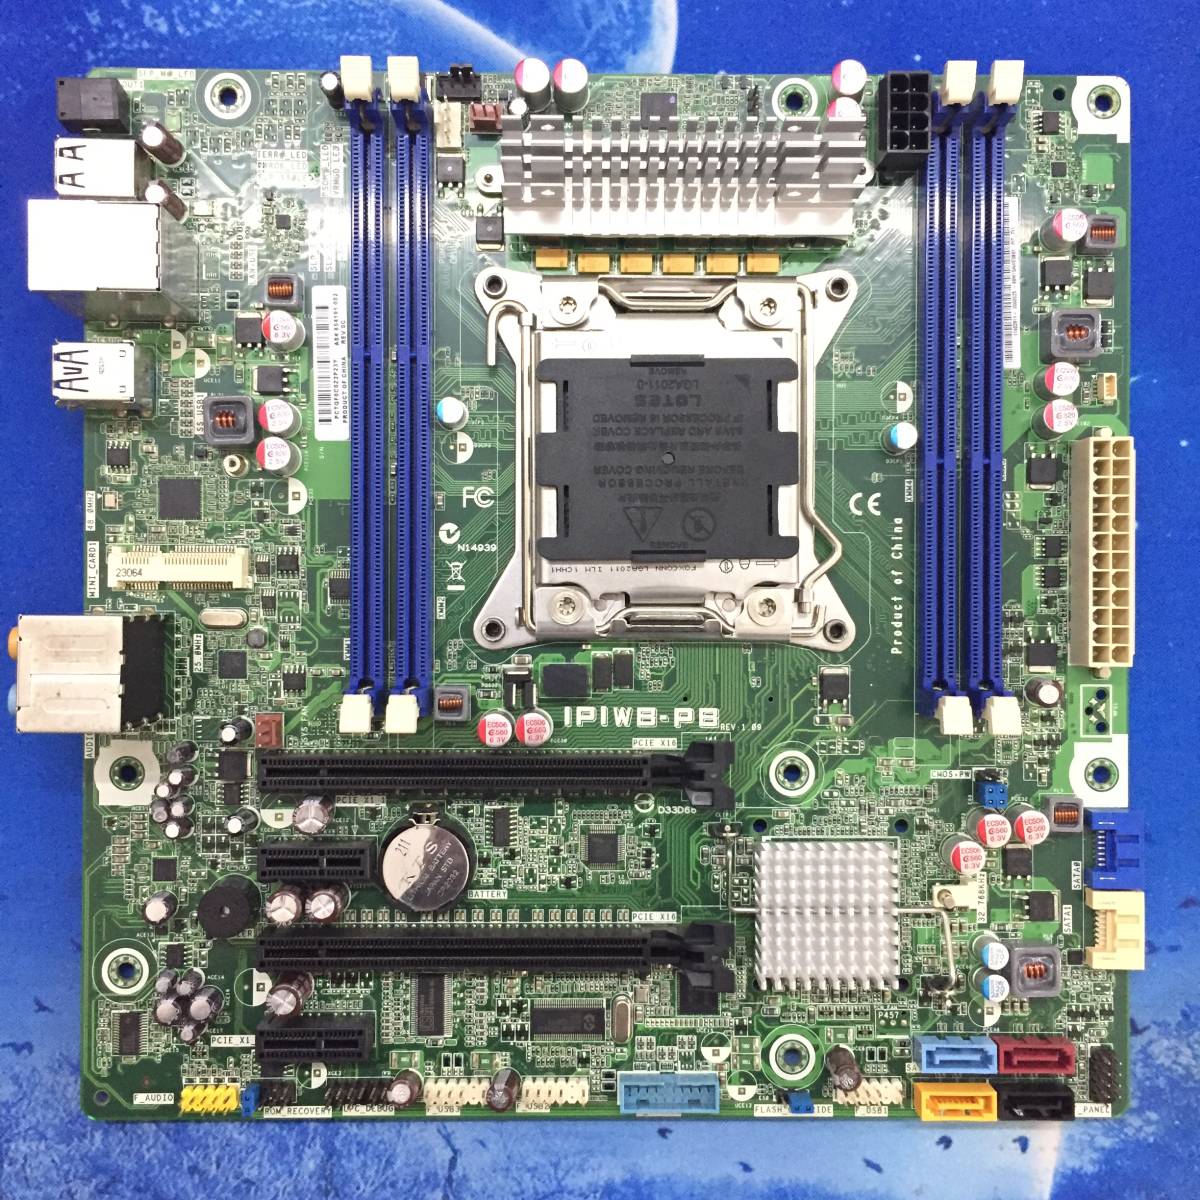 HP IPIWB-PB X79 マザーボード　LGA 2011 ATX 654191-001